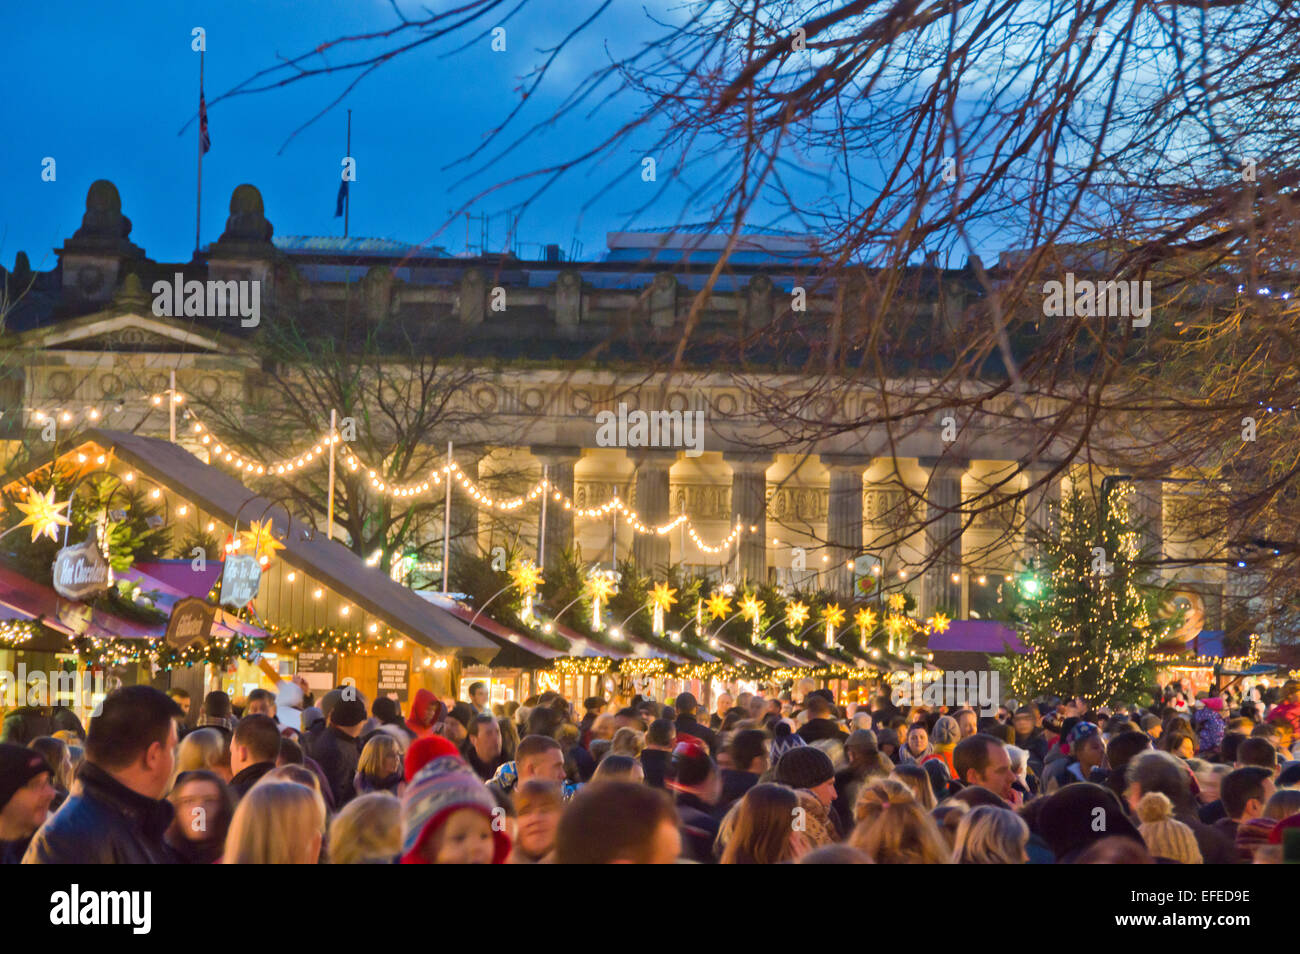 Princes street, Édimbourg, lumières de Noël, des foules, Ecosse, Royaume-Uni Banque D'Images